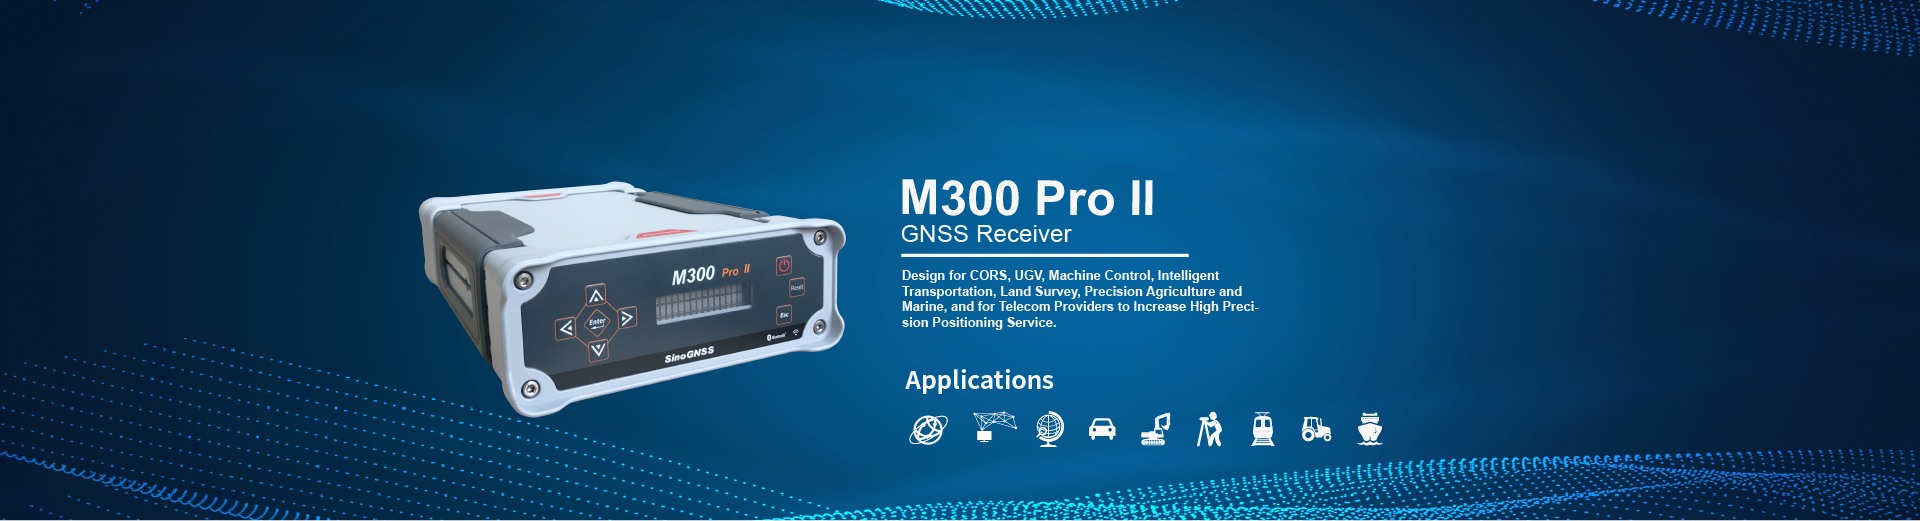 M300 Pro II GNSS Receiver